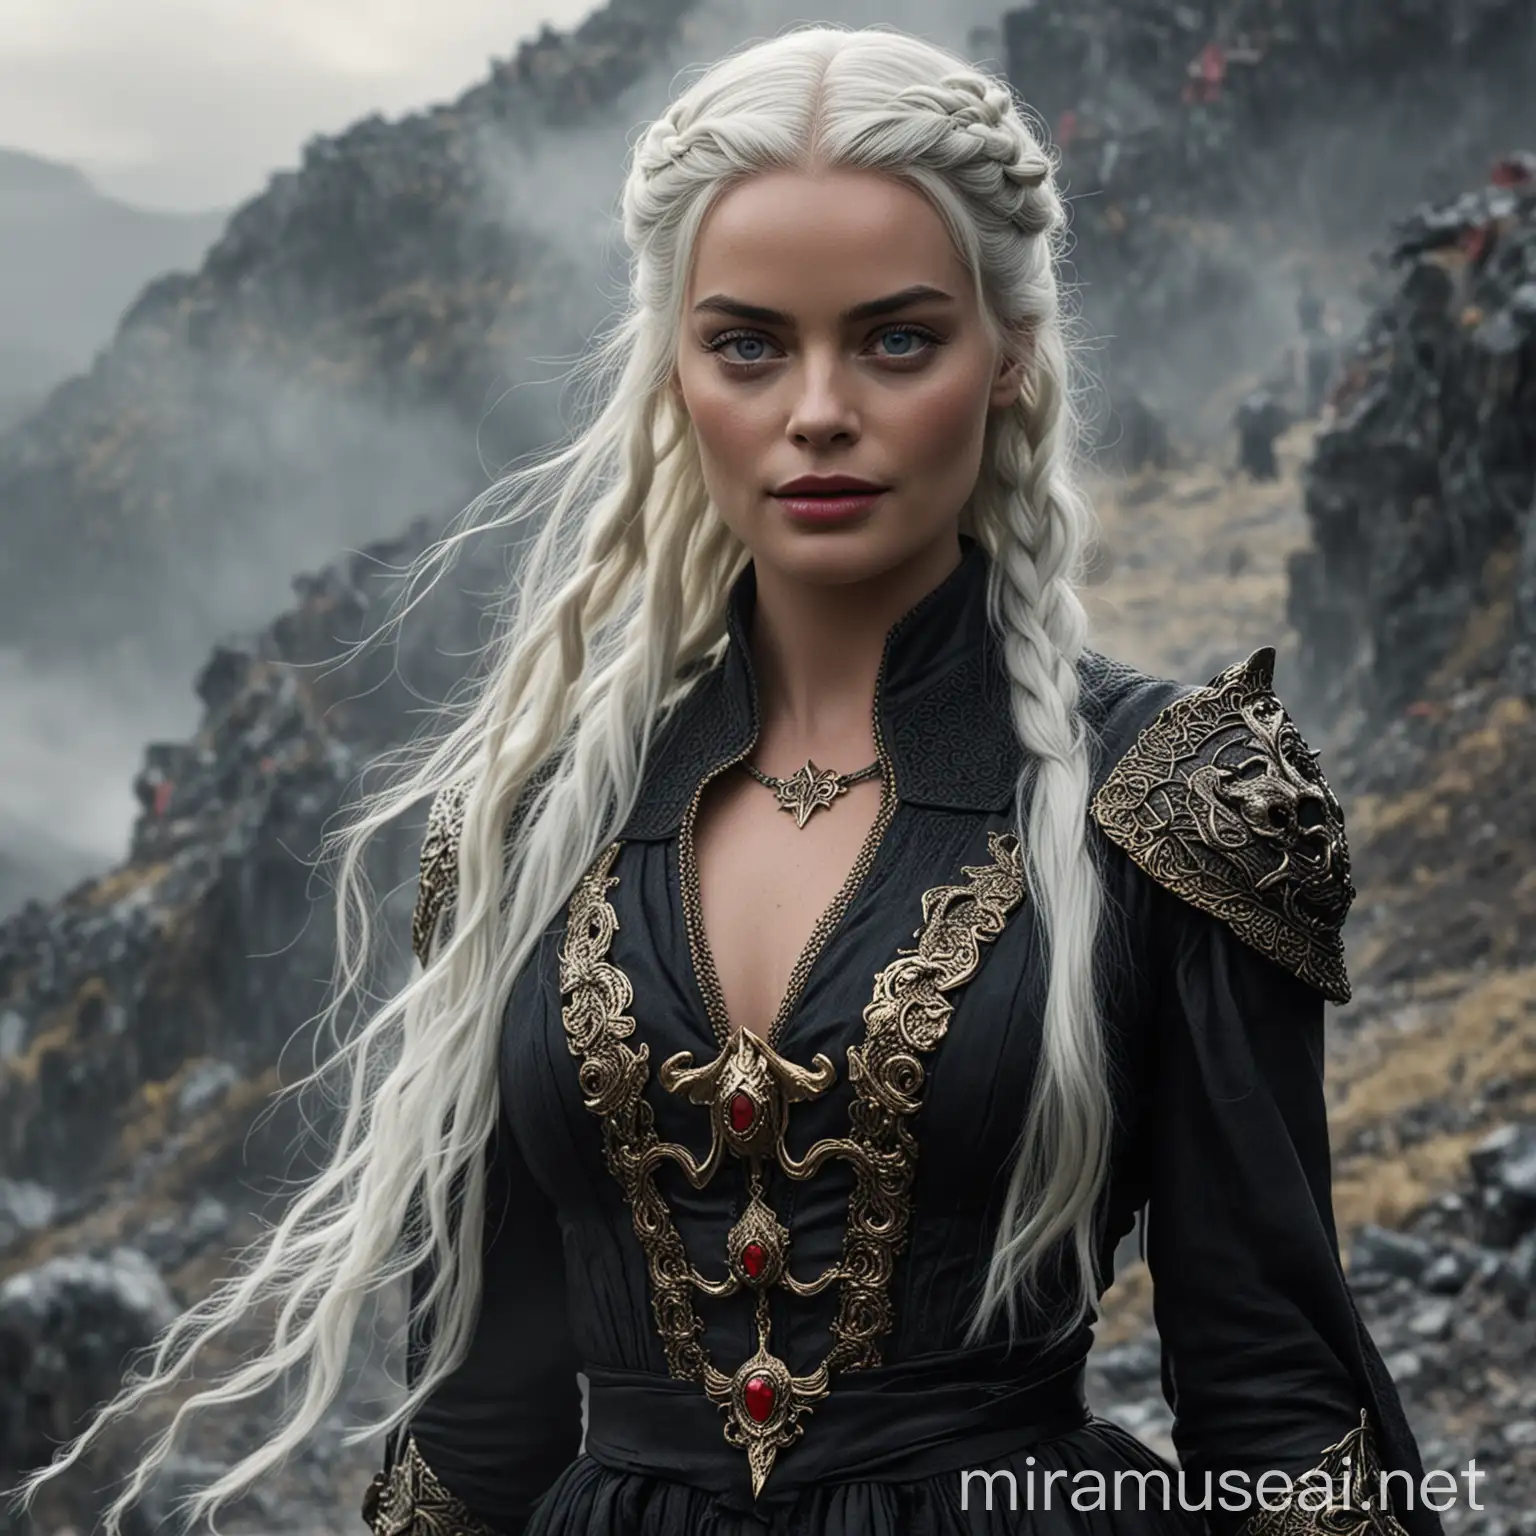 Margot Robbie en tant que princesse de la Maison Targaryen de la Vieille Valyria aux yeux clairs avec de longs cheveux blancs-argentés coiffé avec des tresses, portant une longue robe noire avec des effets d'écailles de dragons et des détails rouges et dorés, marchant sur une pente brumeuse d'une montagne